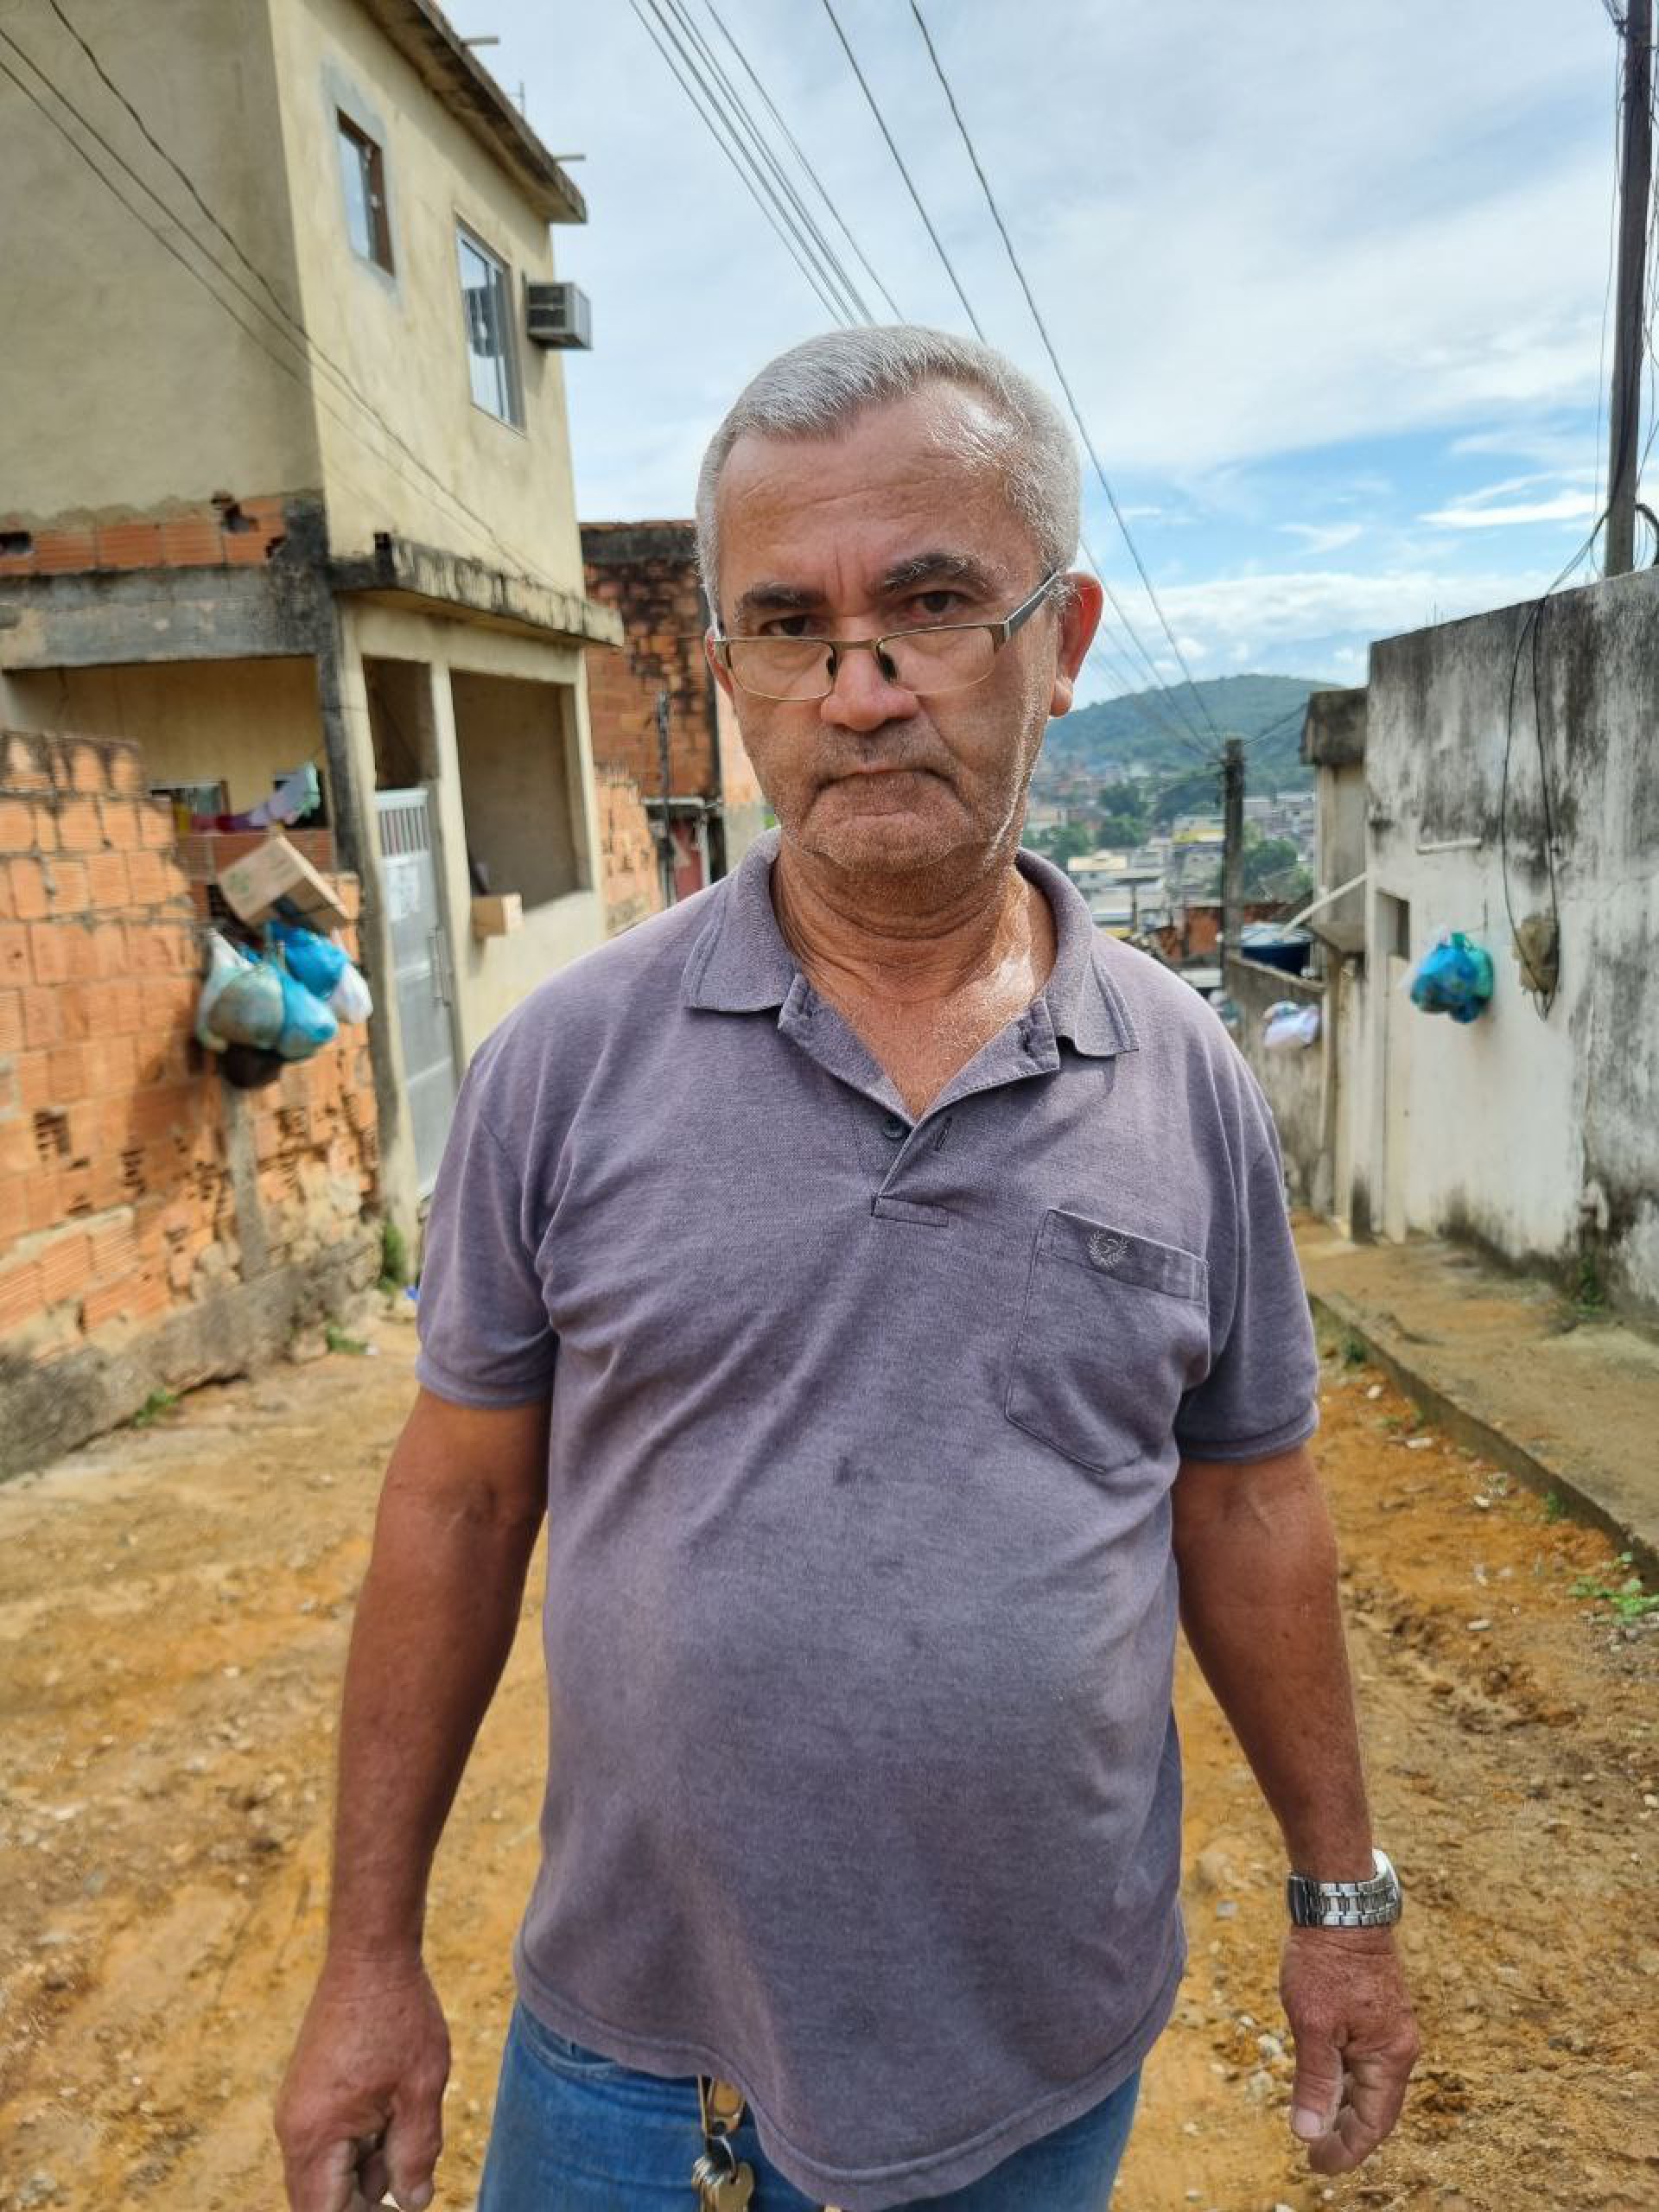 Roberto Felipe, morador do bairro há 40 anos, disse que o abastecimento na localidade sempre foi difícil - Divulgação